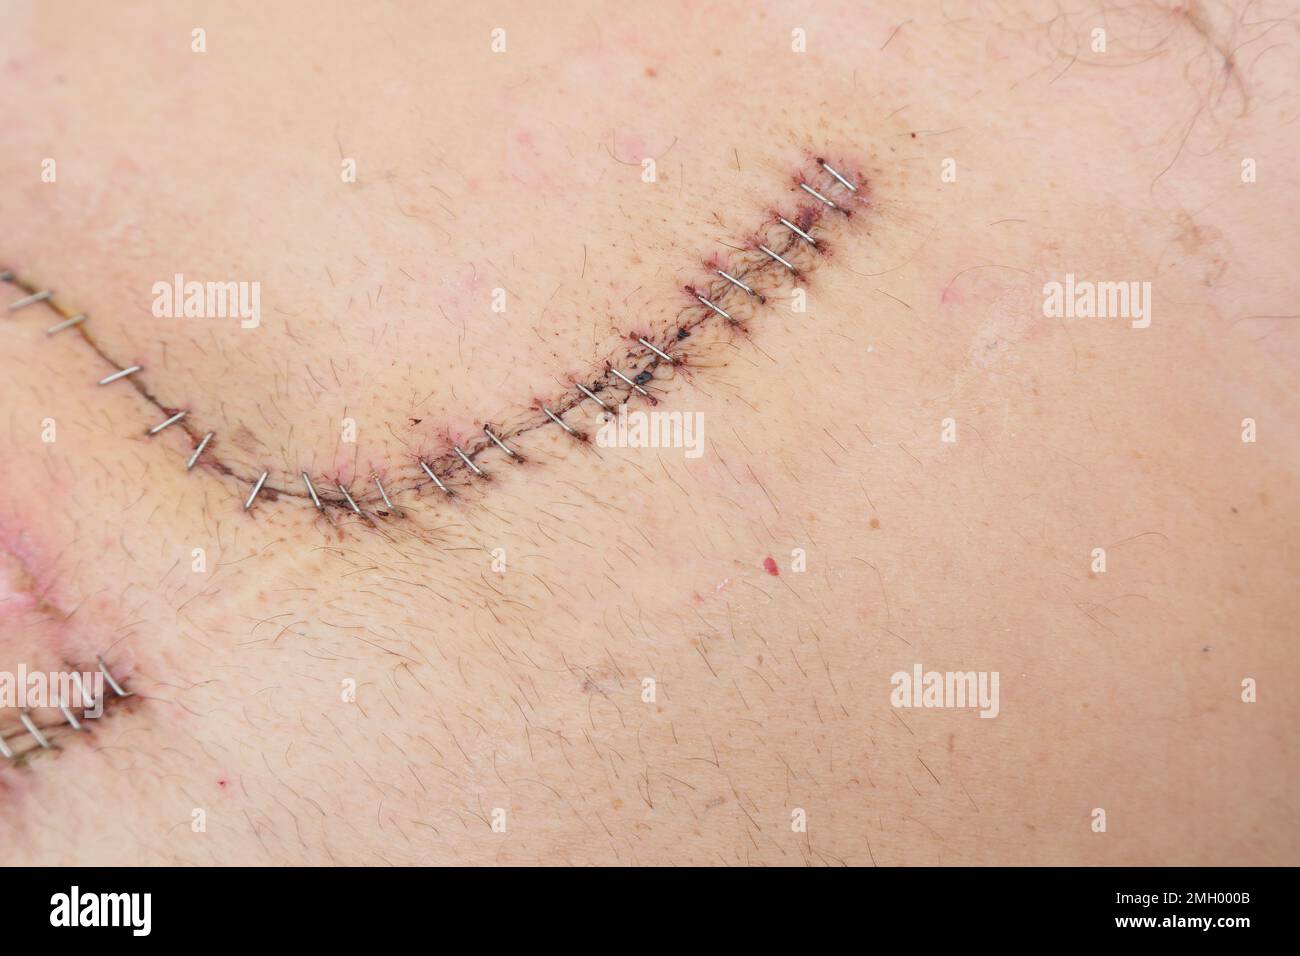 Surgical Staples vs Stitches